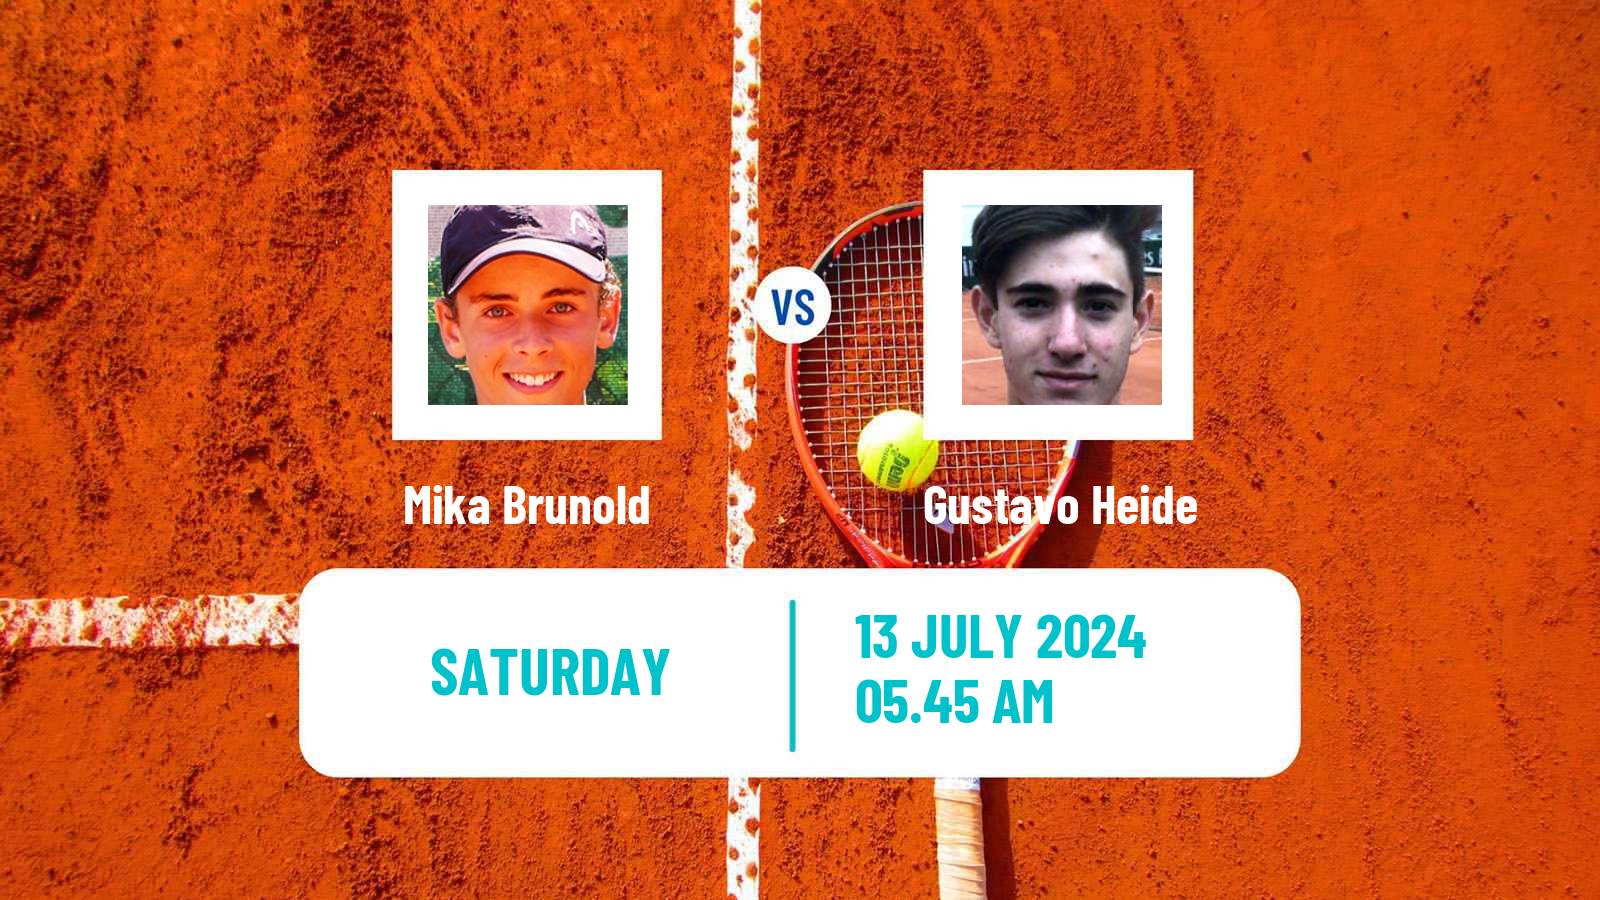 Tennis ATP Gstaad Mika Brunold - Gustavo Heide